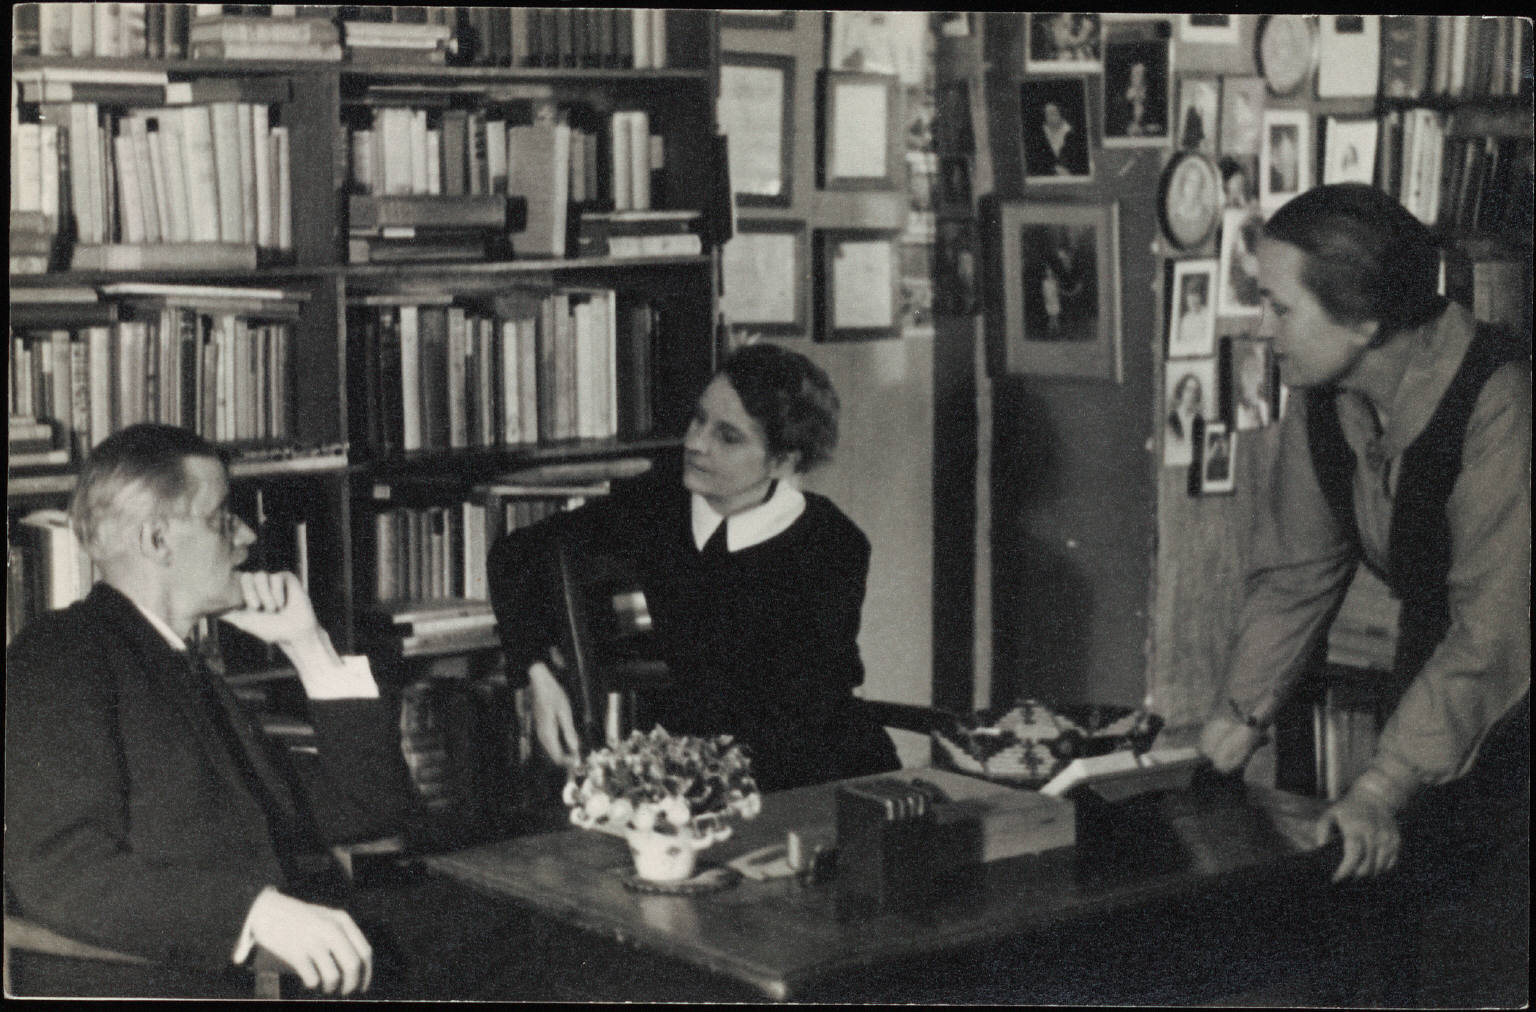 Джеймс Джойс, Сильвия Бич и Адриенна Монье в книжном магазине "Shakespeare and Company". Париж, 1920. Источник иллюстрации: Викимедиа